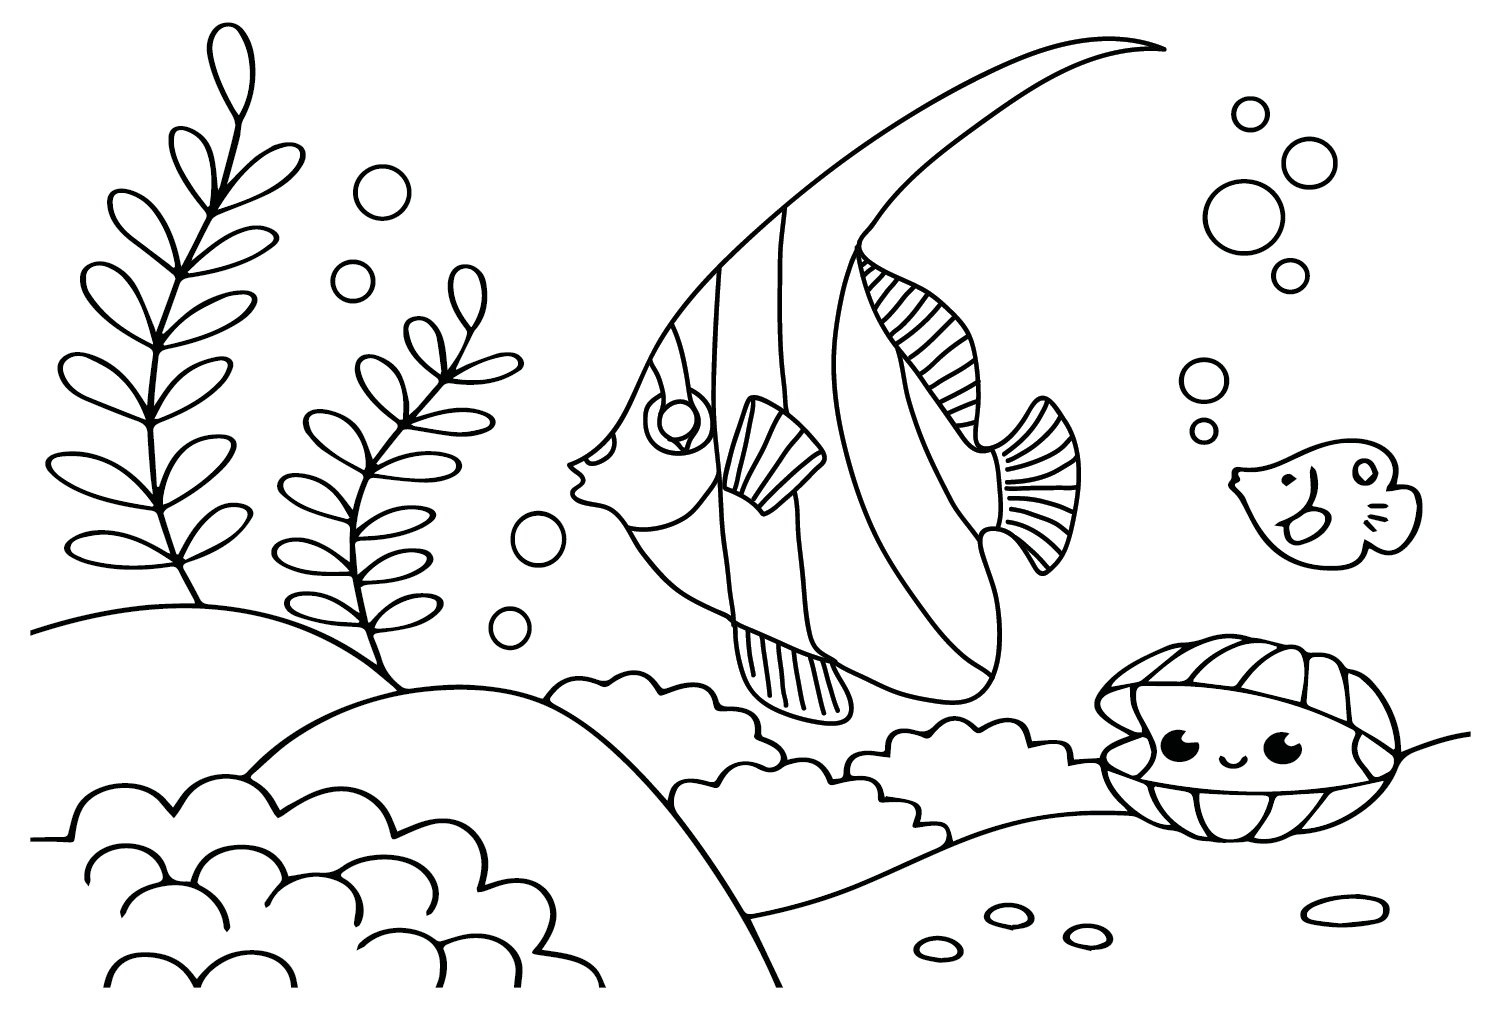 Wimpel-Korallenfisch zum Ausdrucken von Wimpel-Korallenfisch